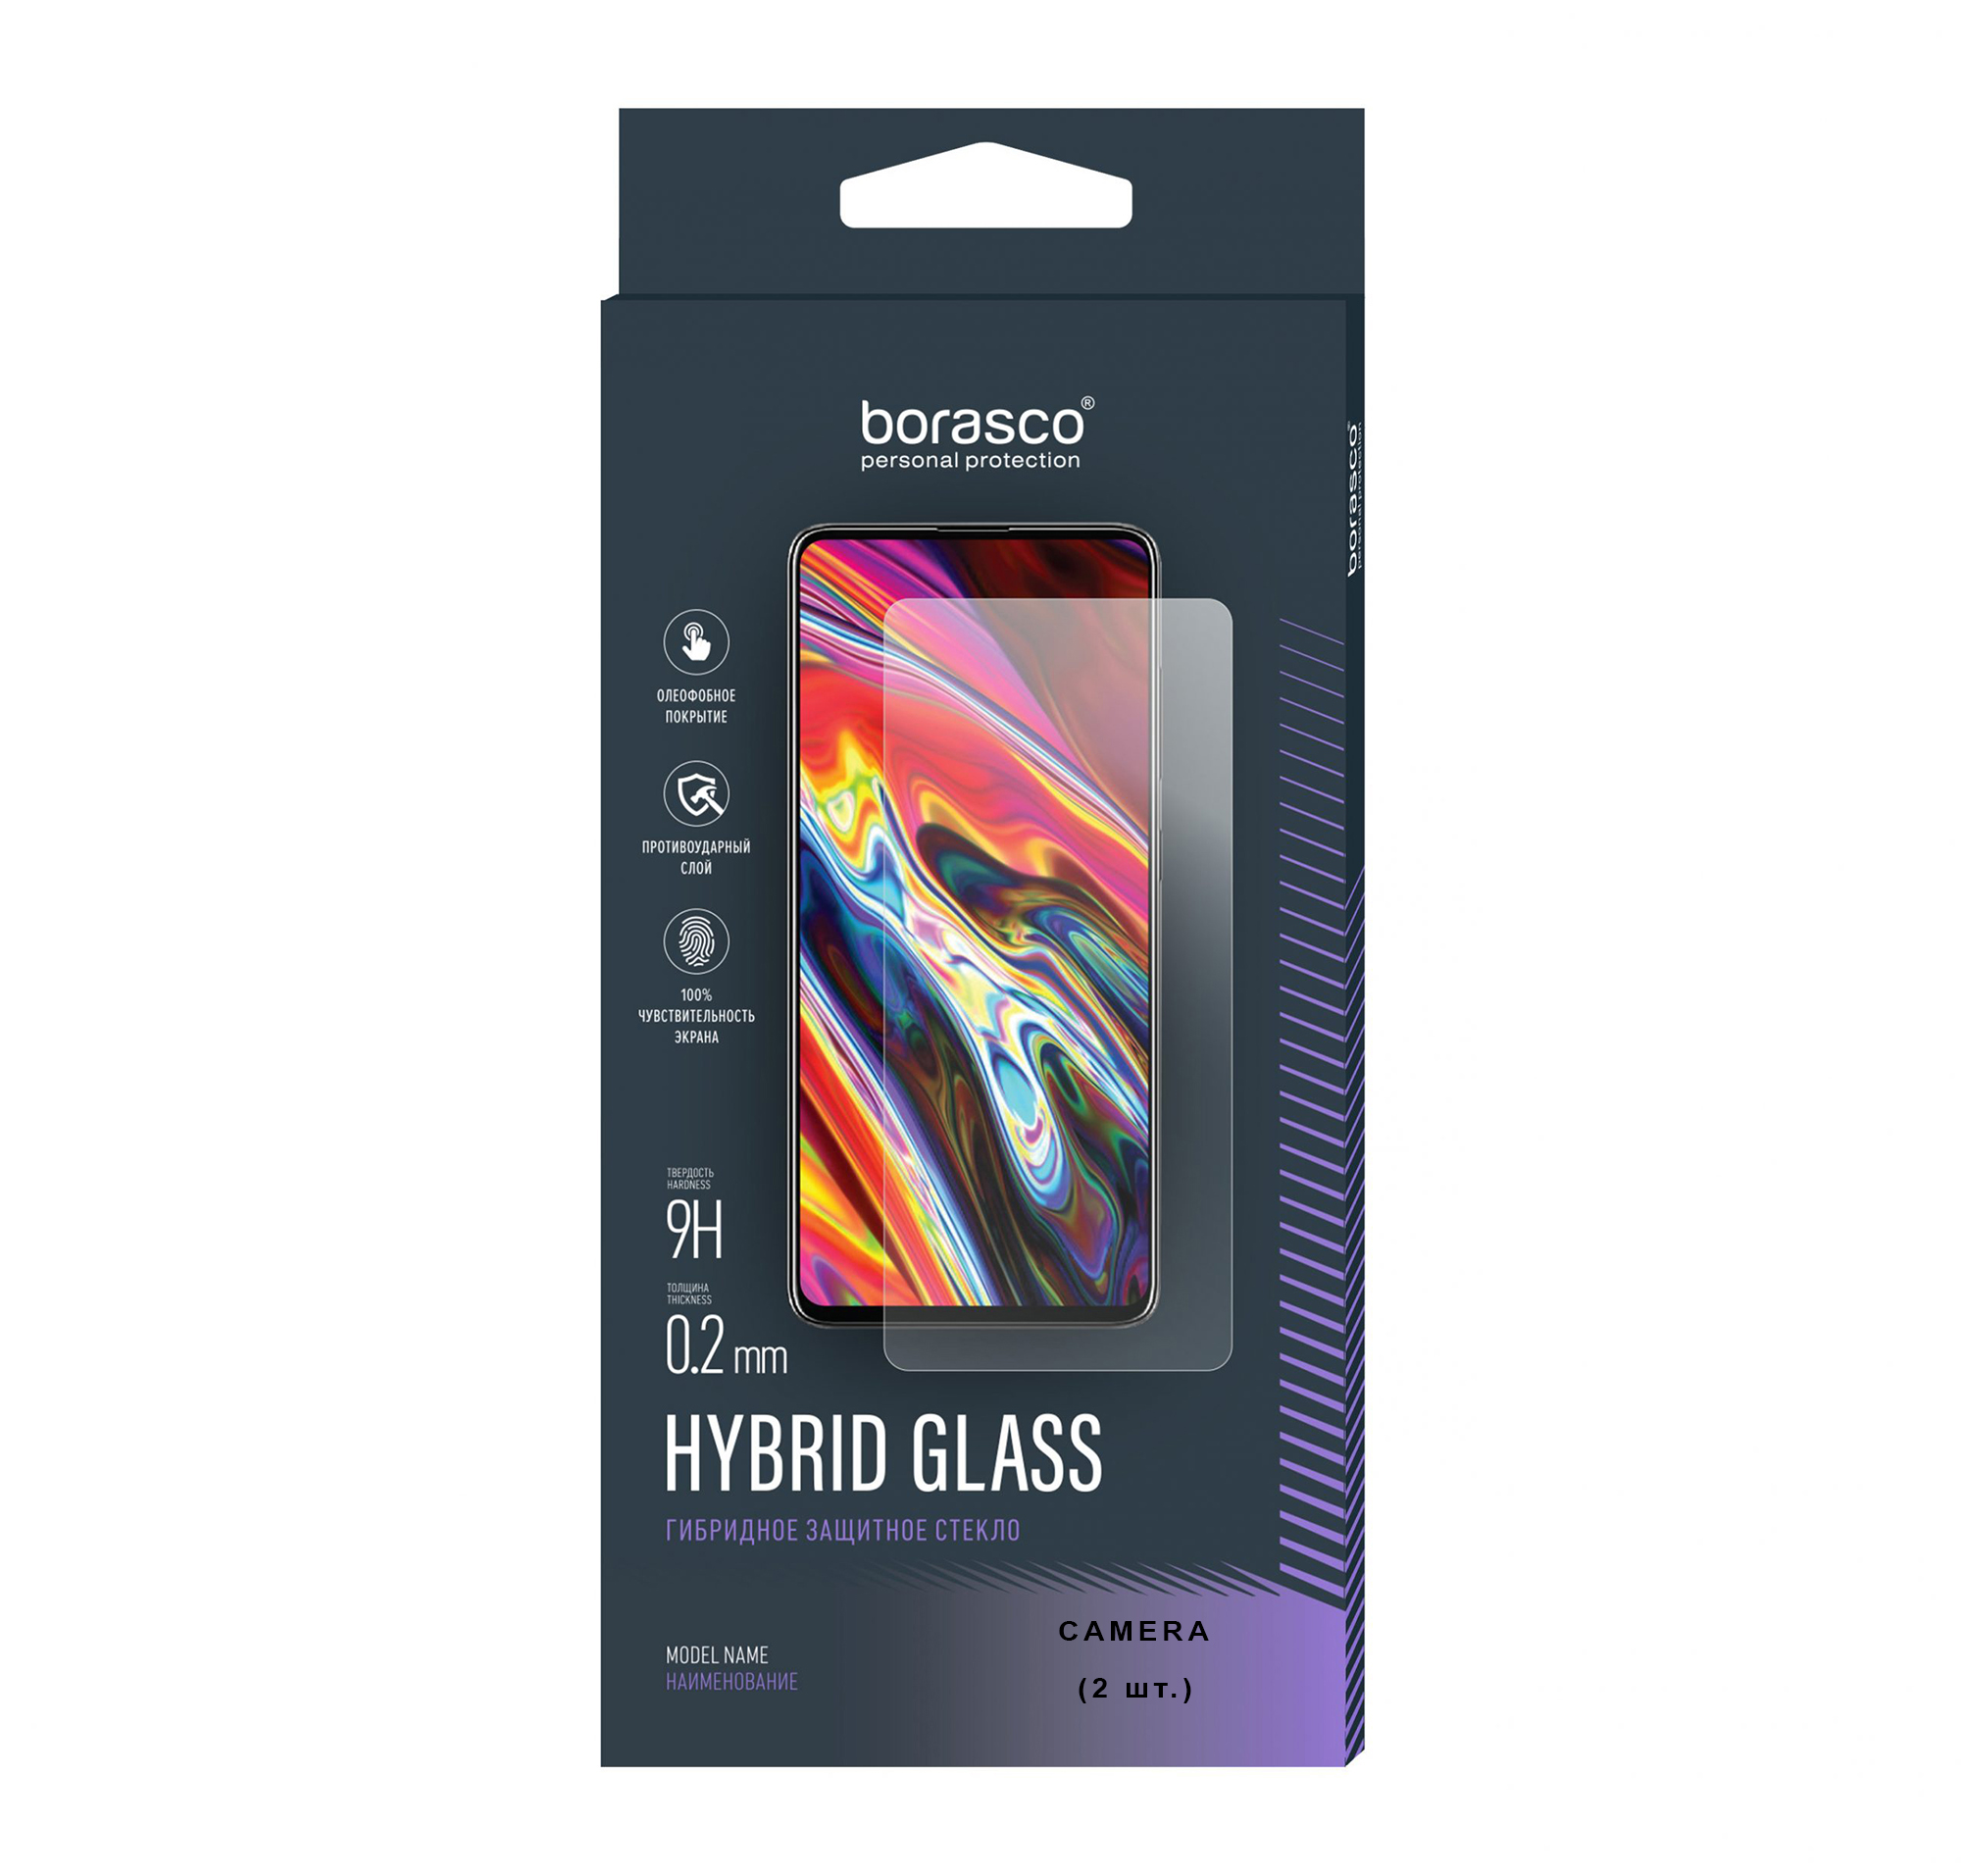 Защитное стекло (Экран+Камера) Hybrid Glass для Apple Iphone 12 mini защитное стекло для apple iphone 12 mini защитная пленка для apple iphone 12 mini 3d стекло на айфон 12 мини